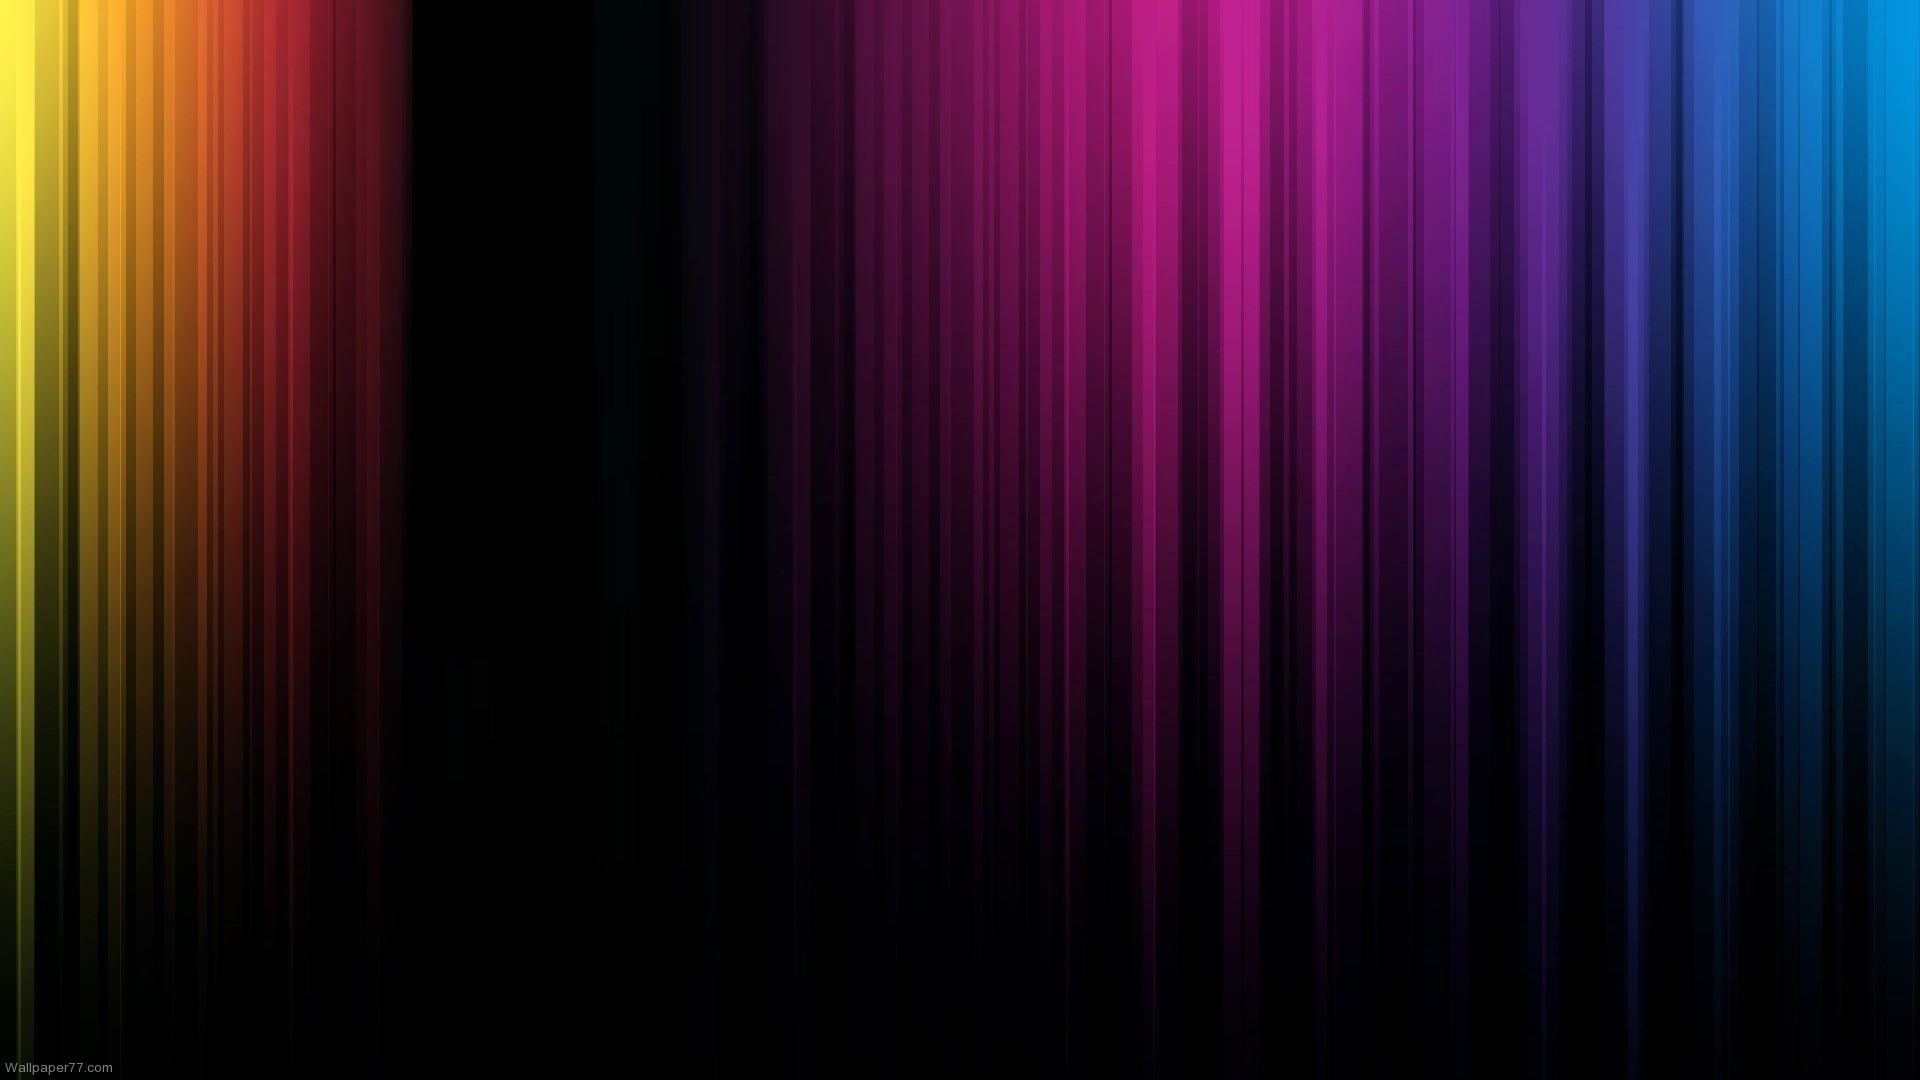 光の壁紙パターン,バイオレット,紫の,青い,黒,赤